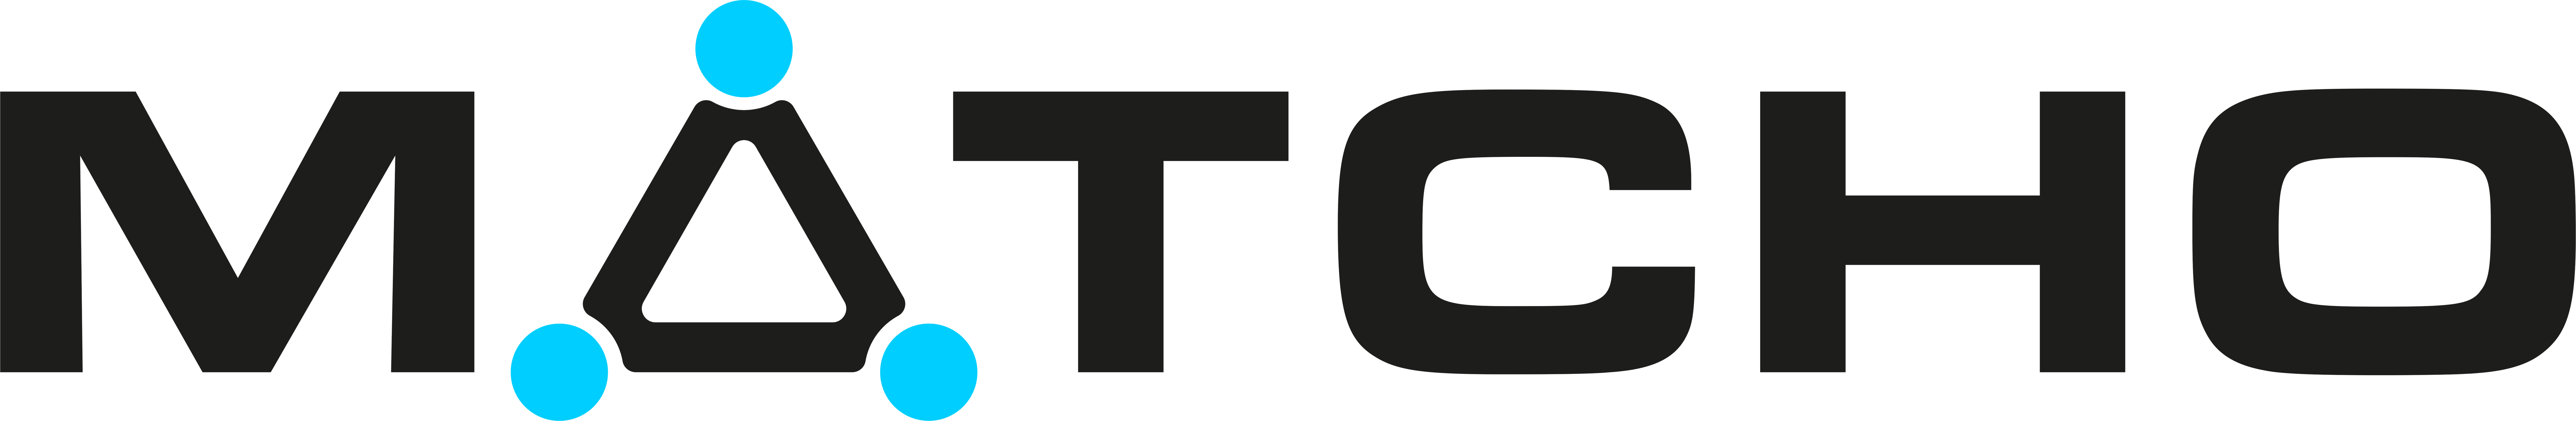 MATCHO logo - dark background